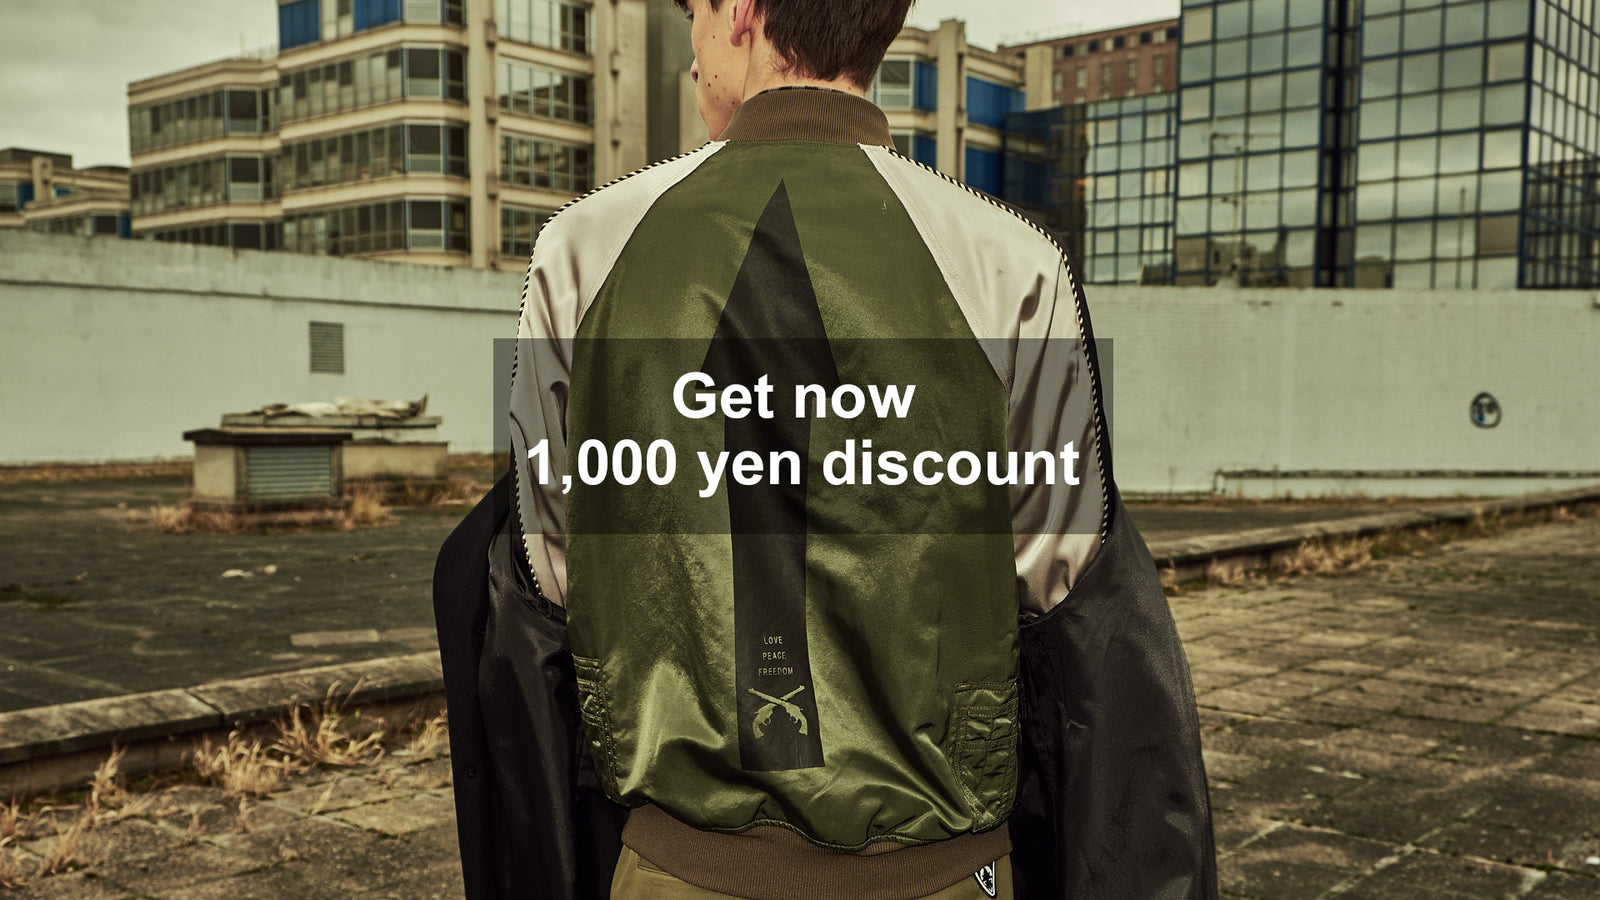 Get now 1,000 yen discount